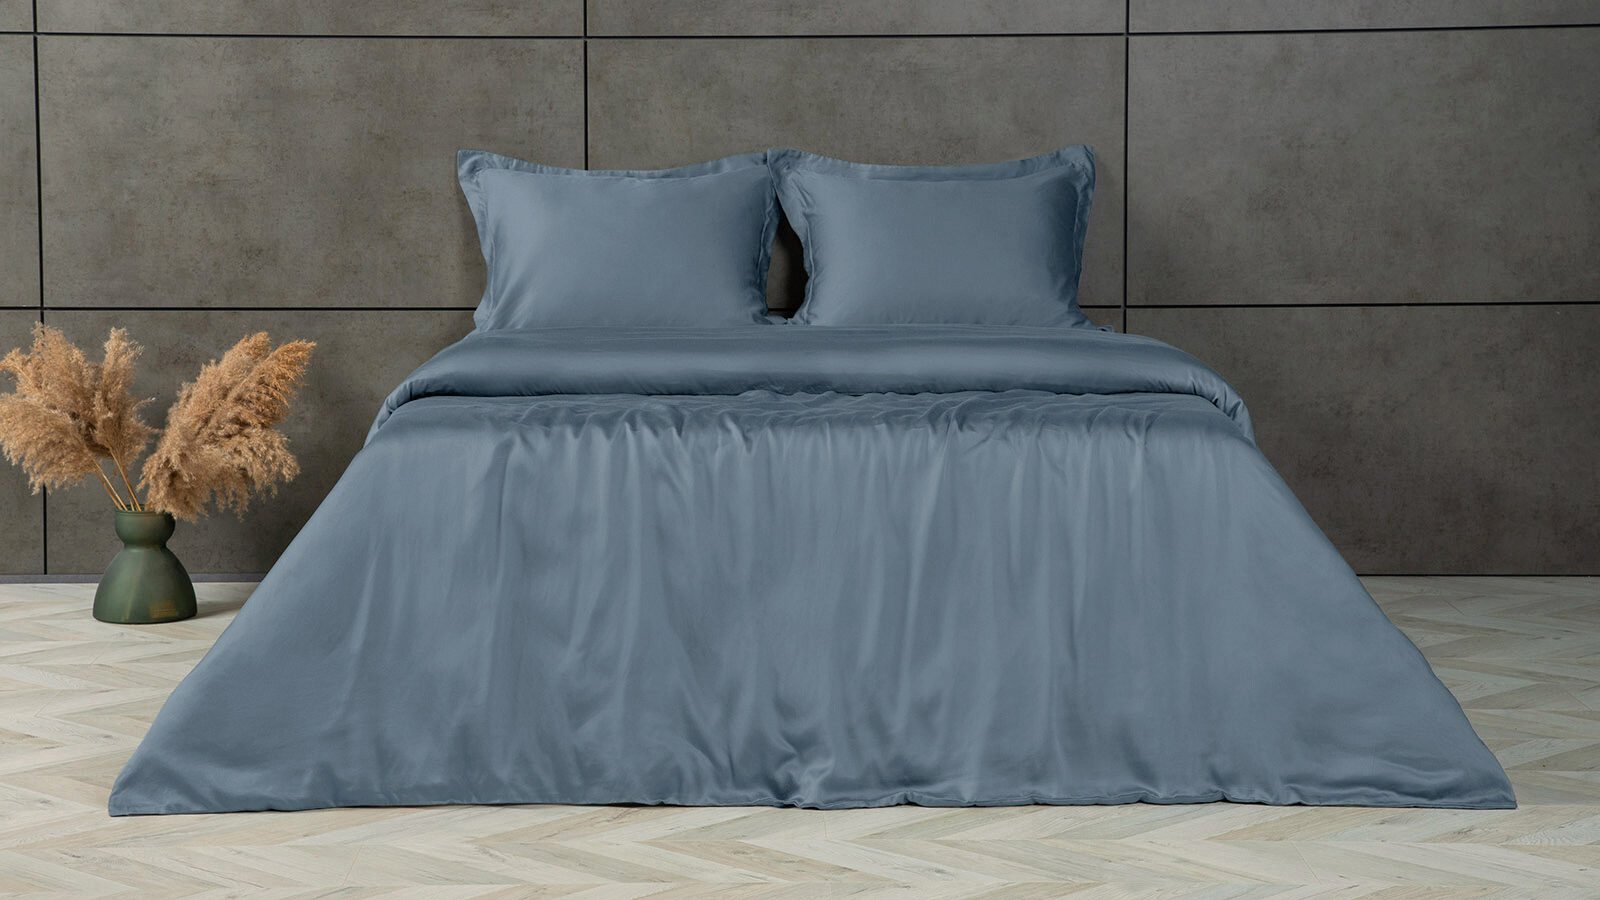 Комплект постельного белья Solid Tencel, цвет Синий металлик saival classic рефлекс комплект светоотражающий для собак поводок шейка синий